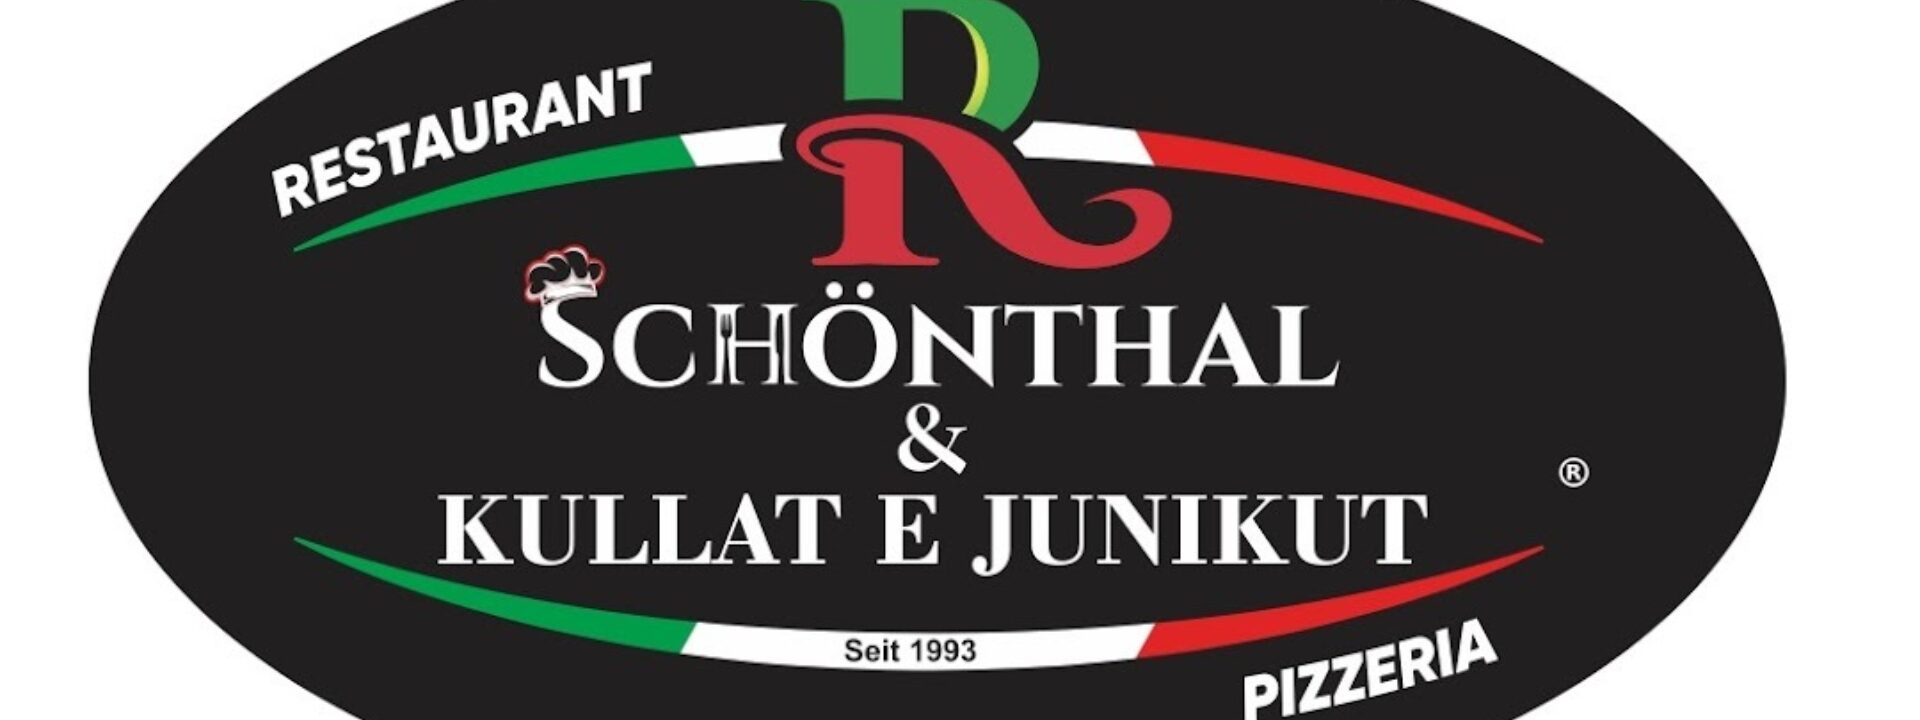 Restaurant Schönthal